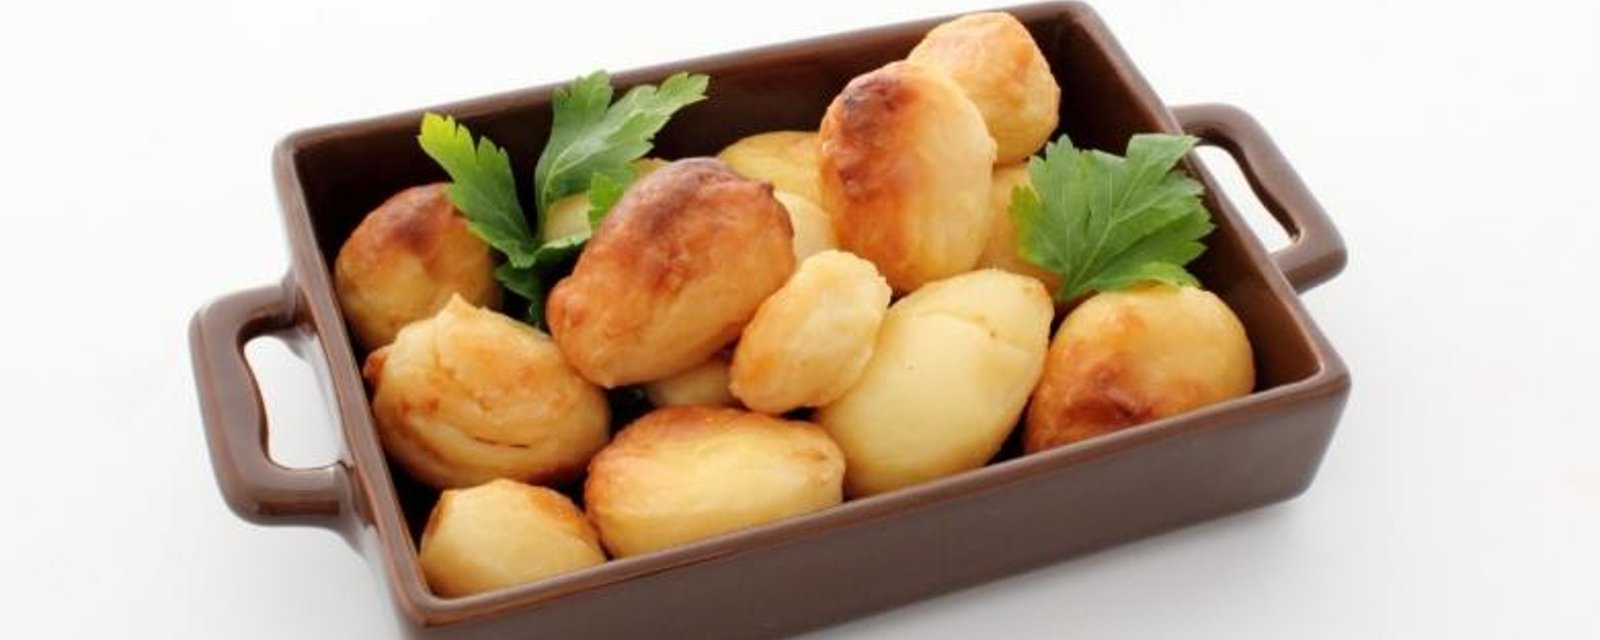 Un accompagnement de pommes de terre croustillantes...une recette simple et rapide